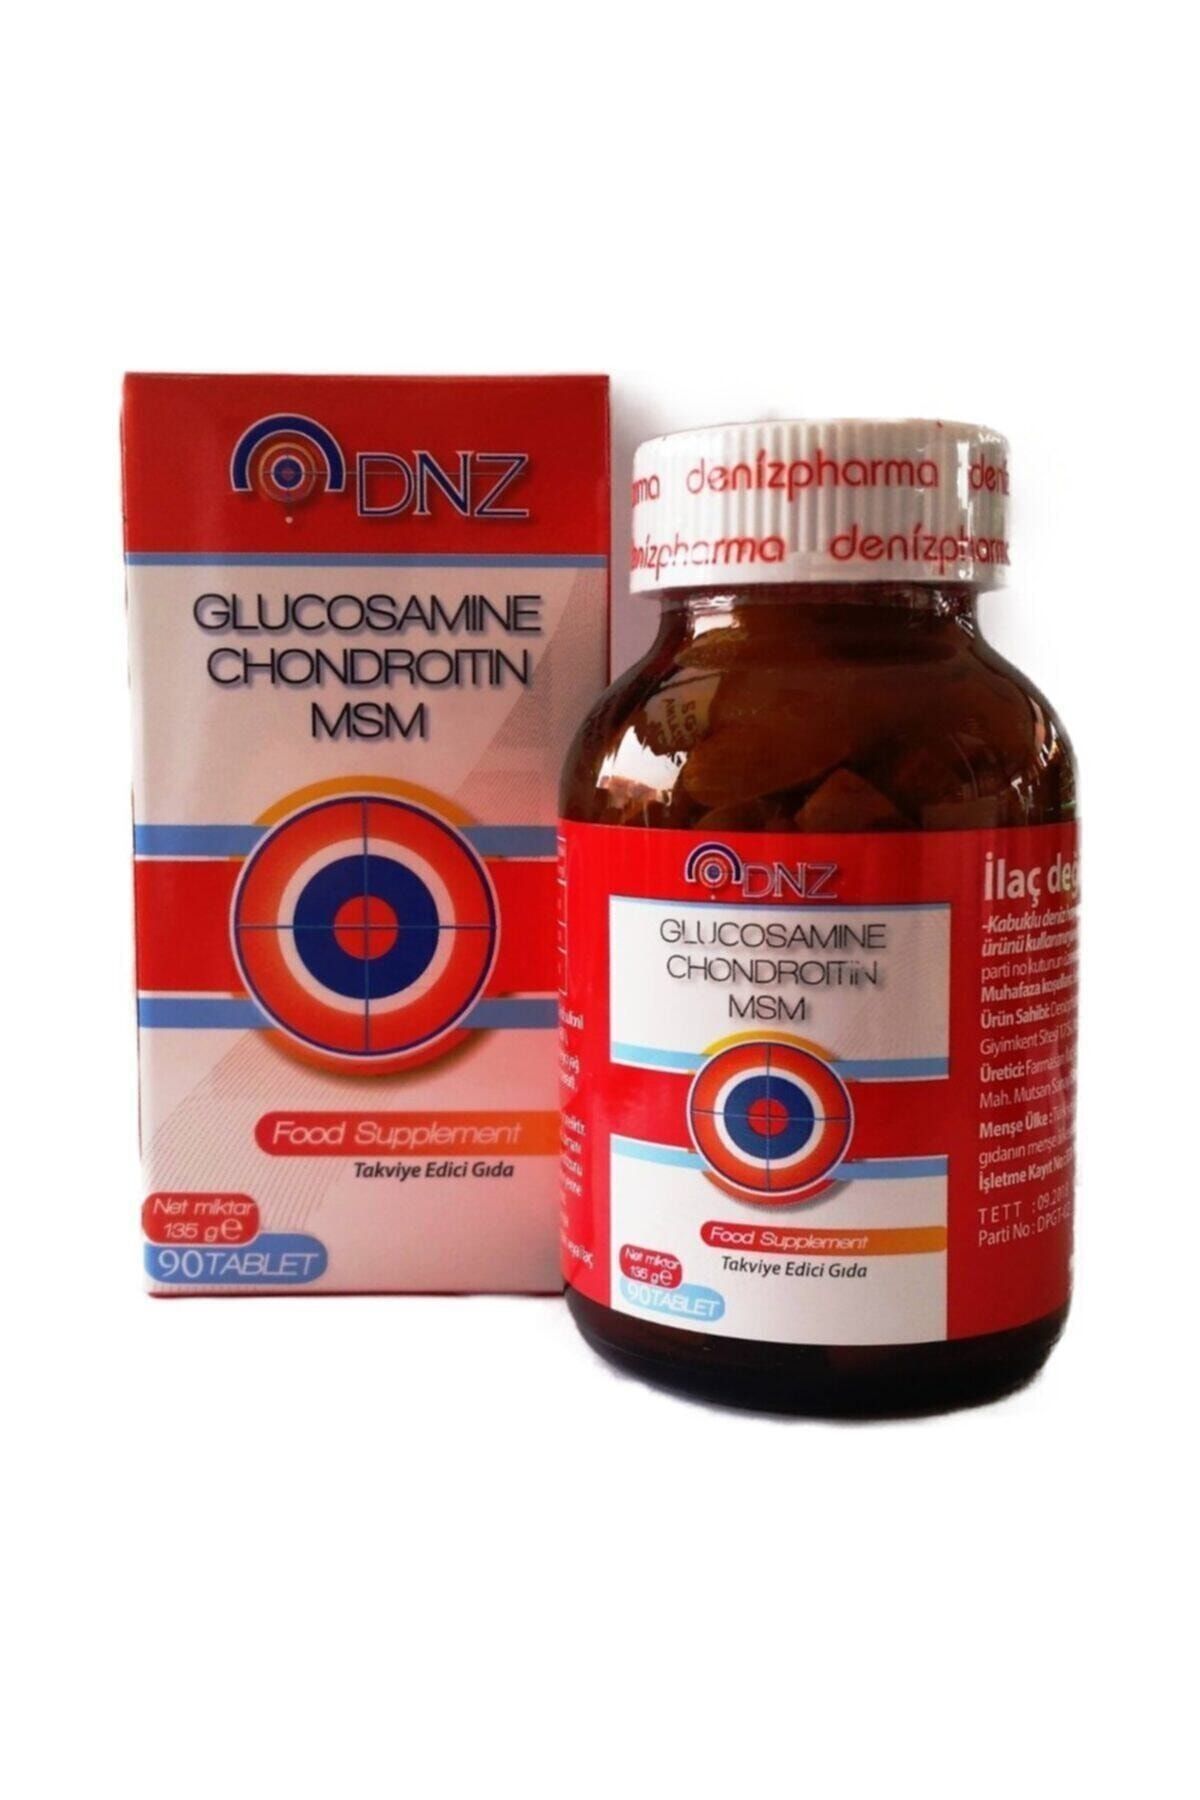 terapinė dozė gliukozamino ir chondroitino jei hypers skauda